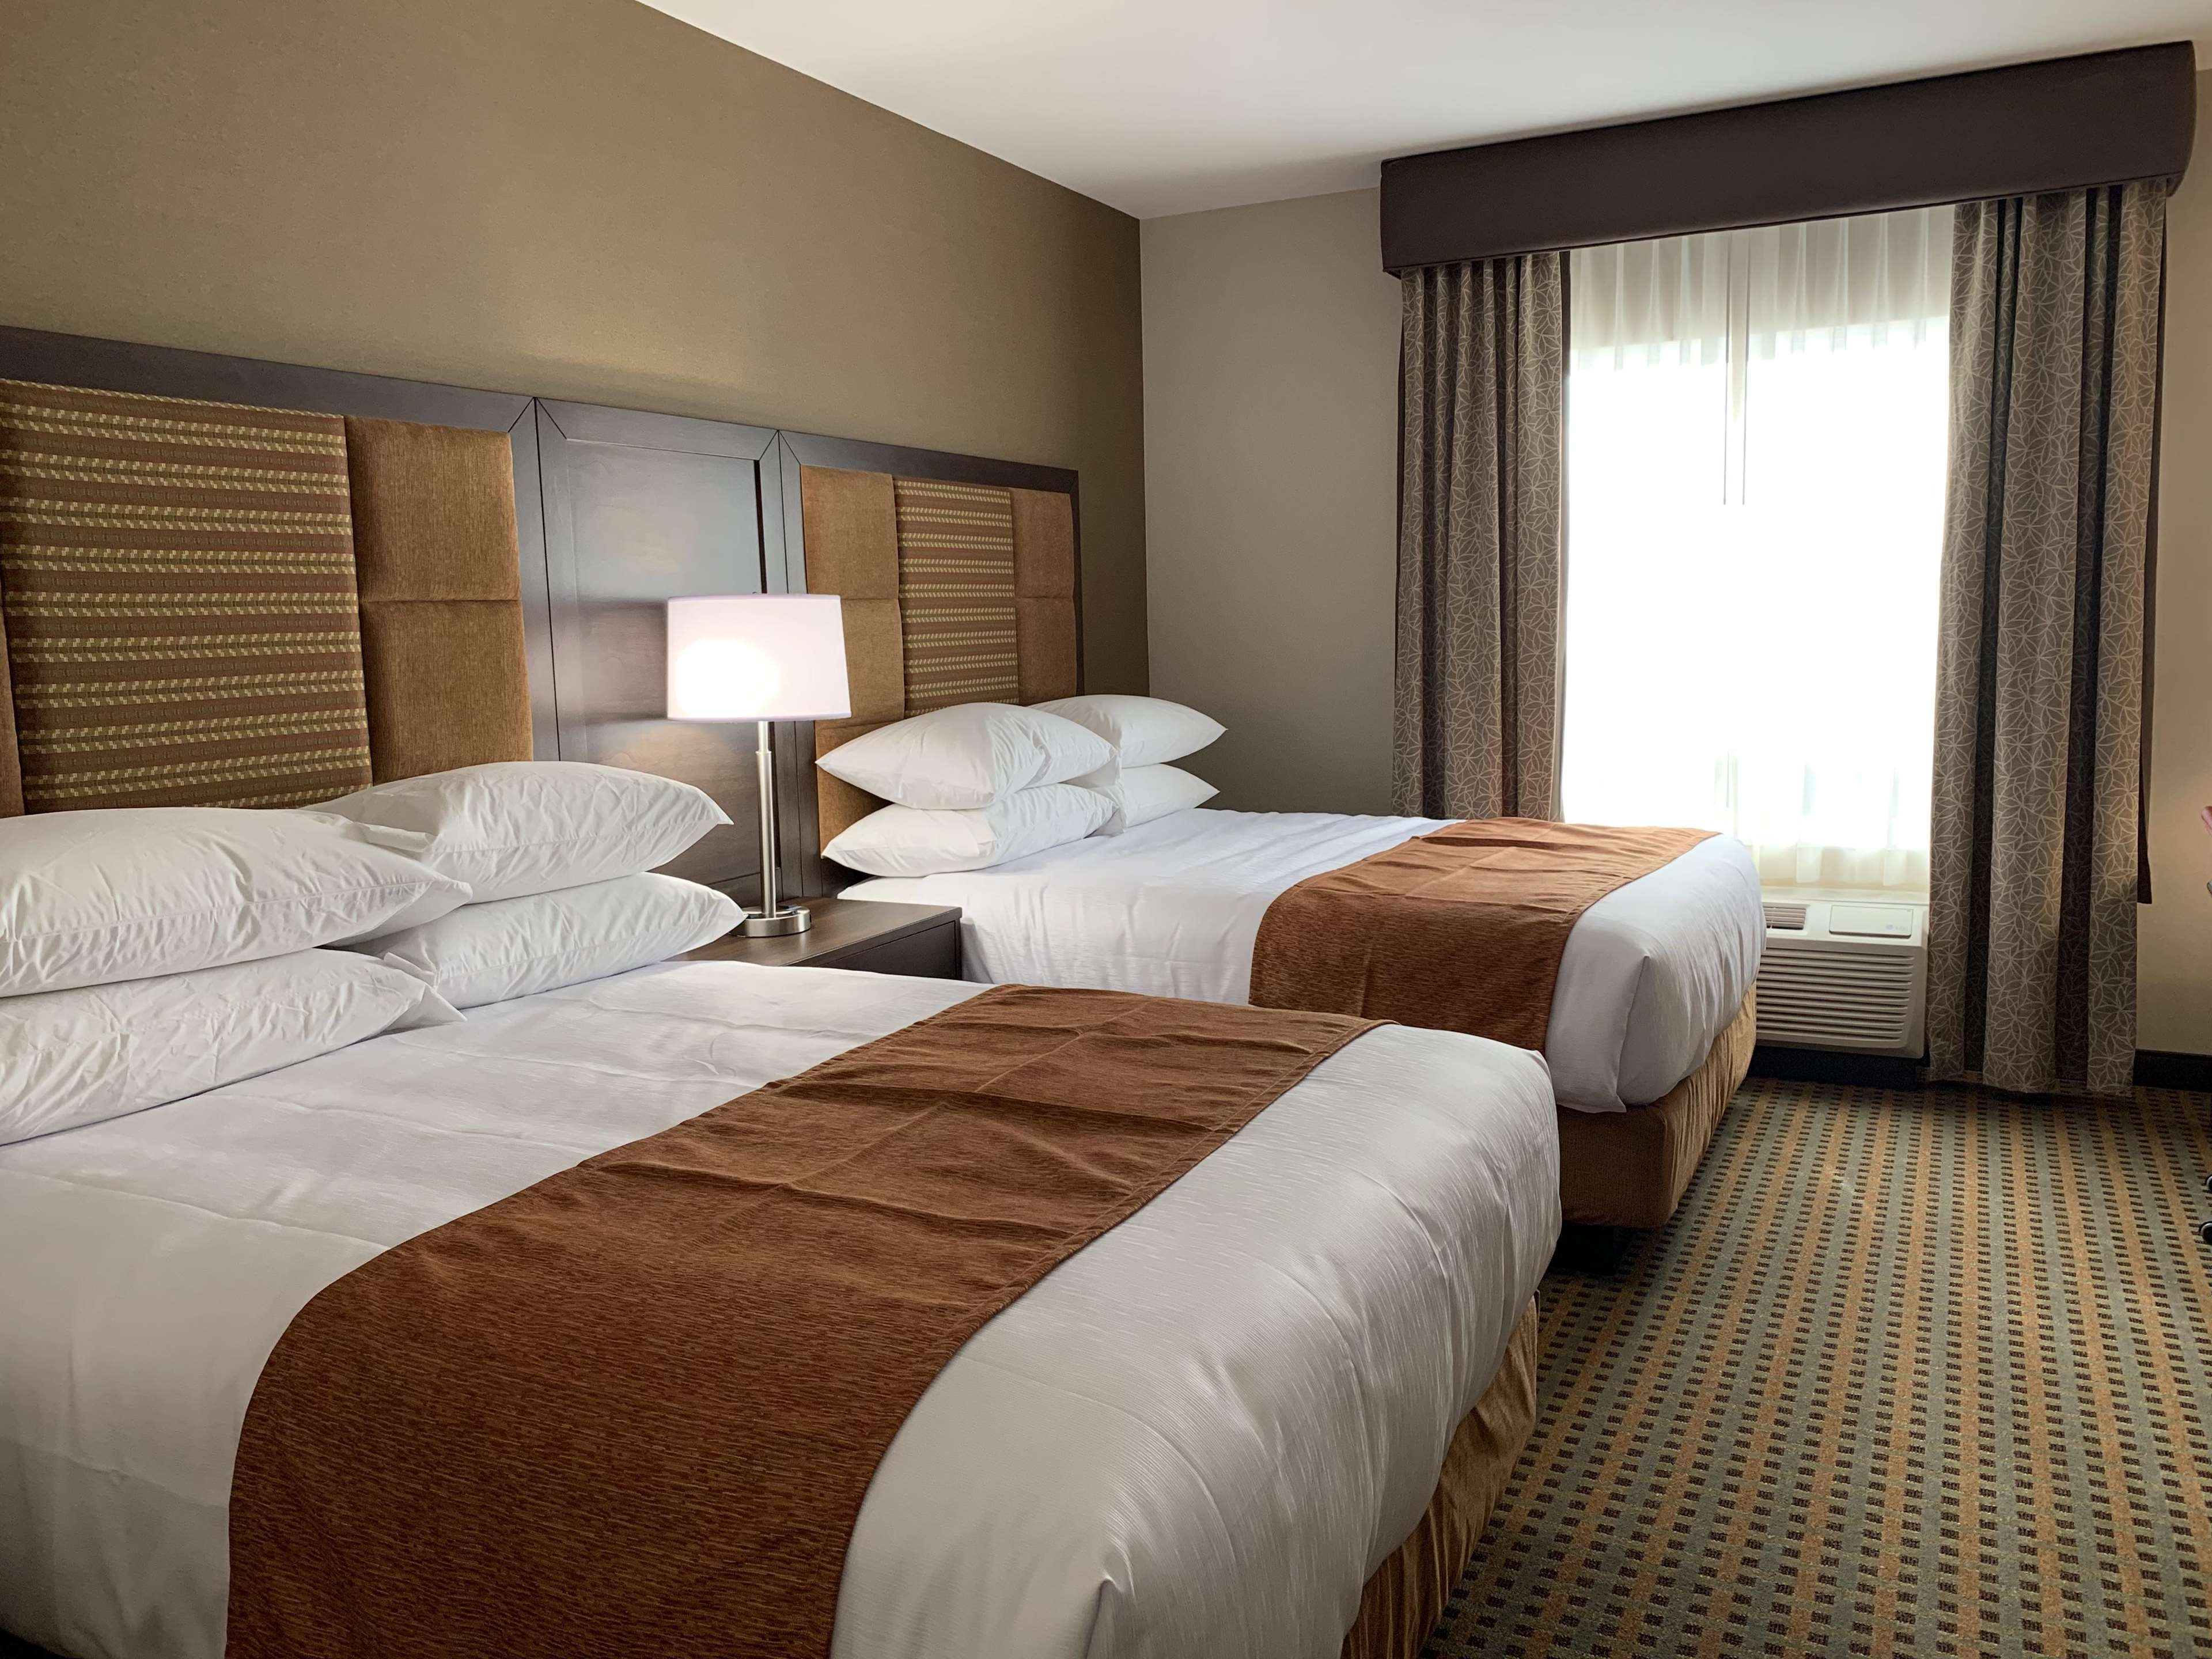 2 Queen Beds Guest Room Best Western Plus Hinton Inn & Suites Hinton (780)817-7000